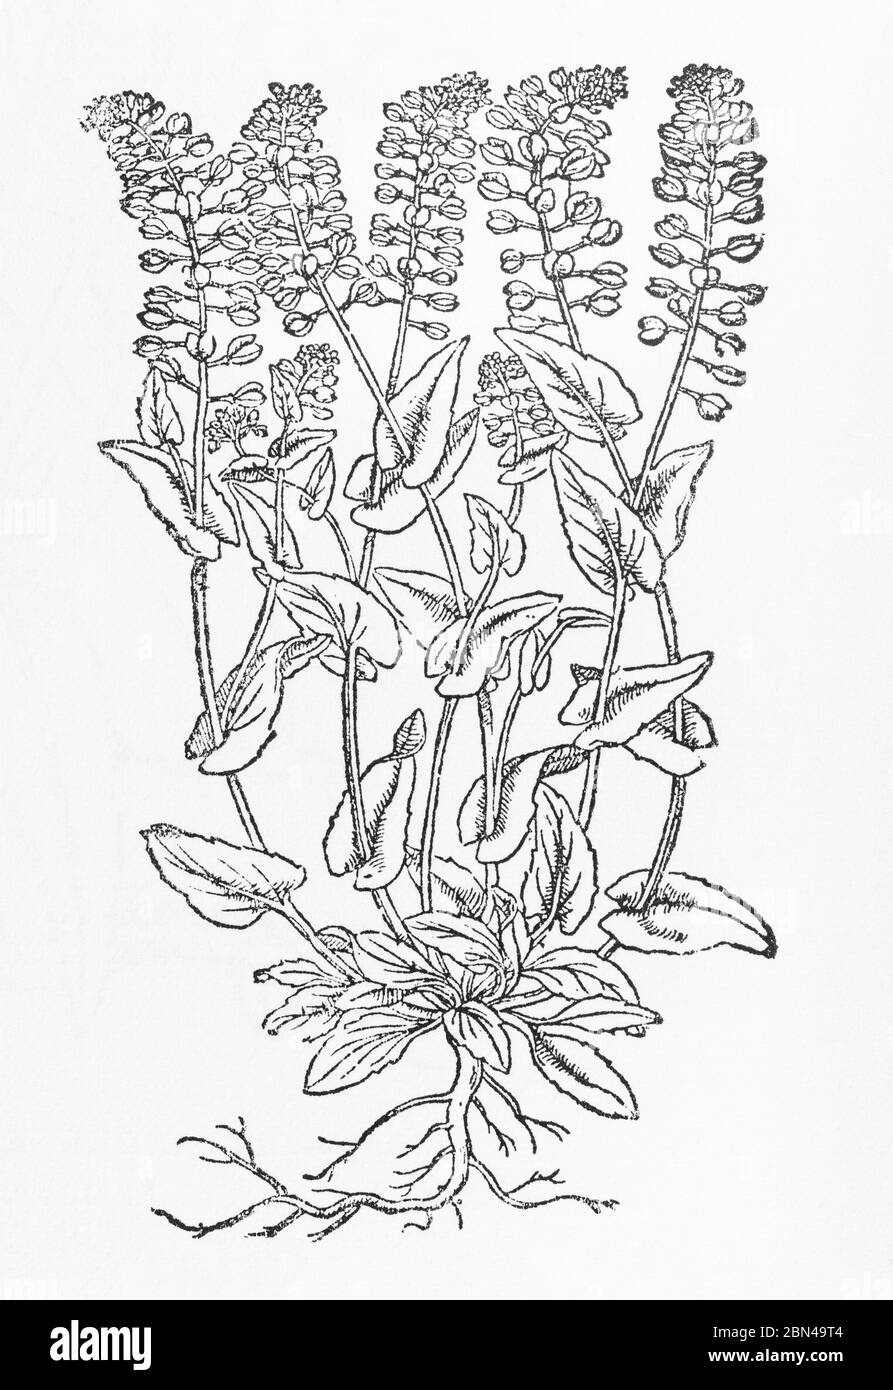 Taglio di legno identificato come Hoary Mustard / Thlaspi incanum in Gerarde's Herball, Storia delle piante. P208 può essere Perfoliate Penny-Cress, Thlaspi perfoliatum Foto Stock